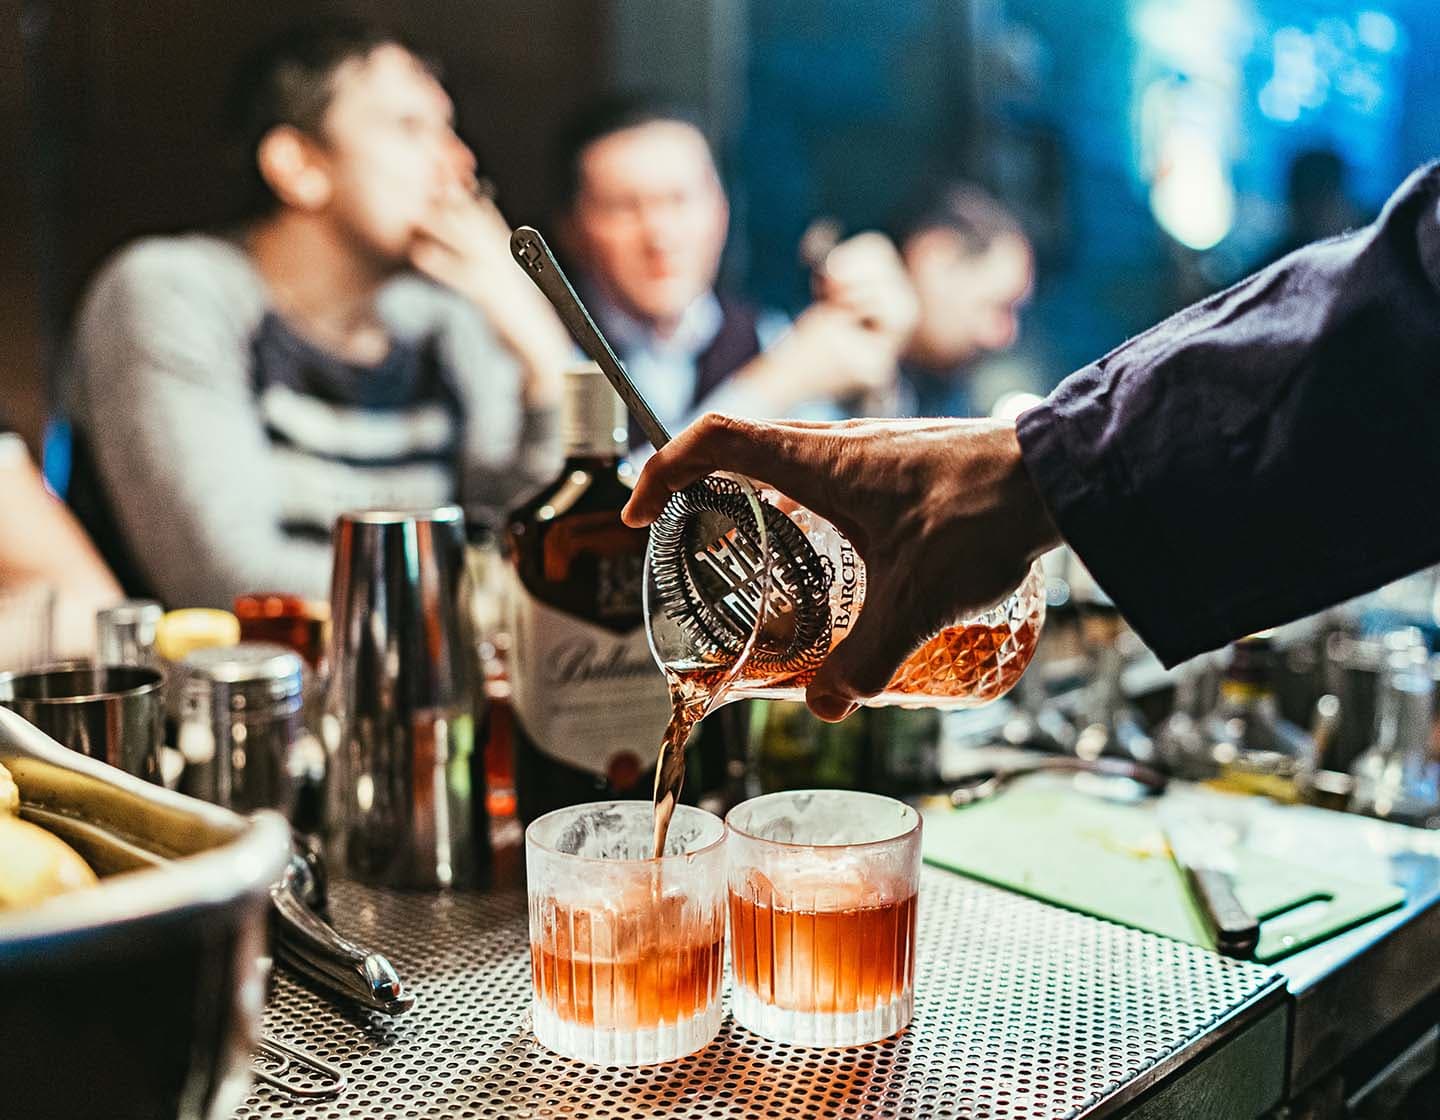  Der Barkeeper schenkt Cocktails mit Rum in zwei Gläser ein